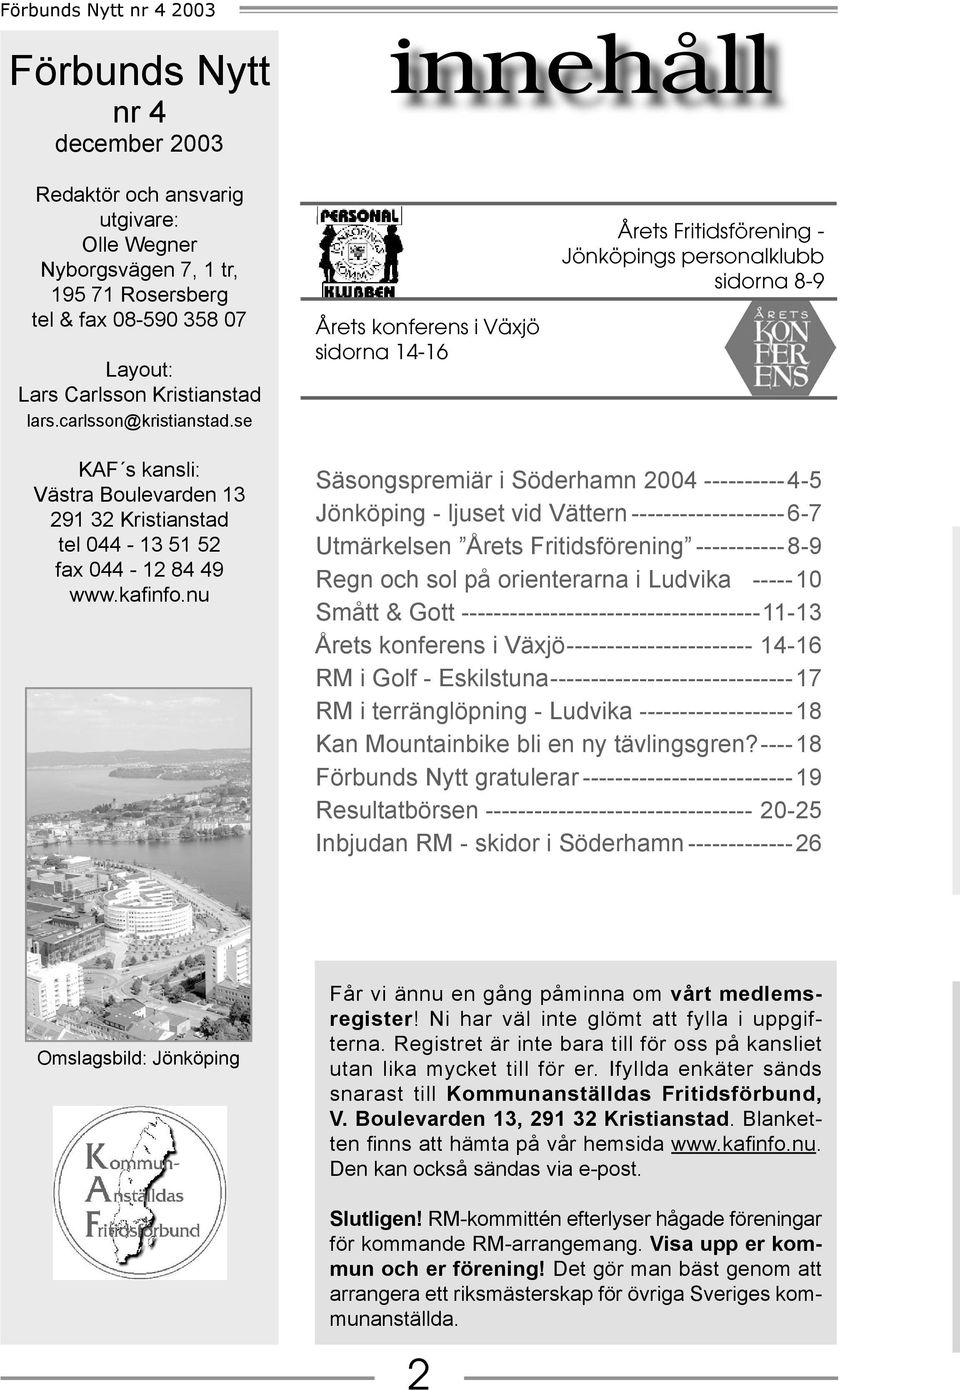 se Årets konferens i Växjö sidorna 14-16 Årets Fritidsförening - Jönköpings personalklubb sidorna 8-9 KAF s kansli: Västra Boulevarden 13 291 32 Kristianstad tel 044-13 51 52 fax 044-12 84 49 www.